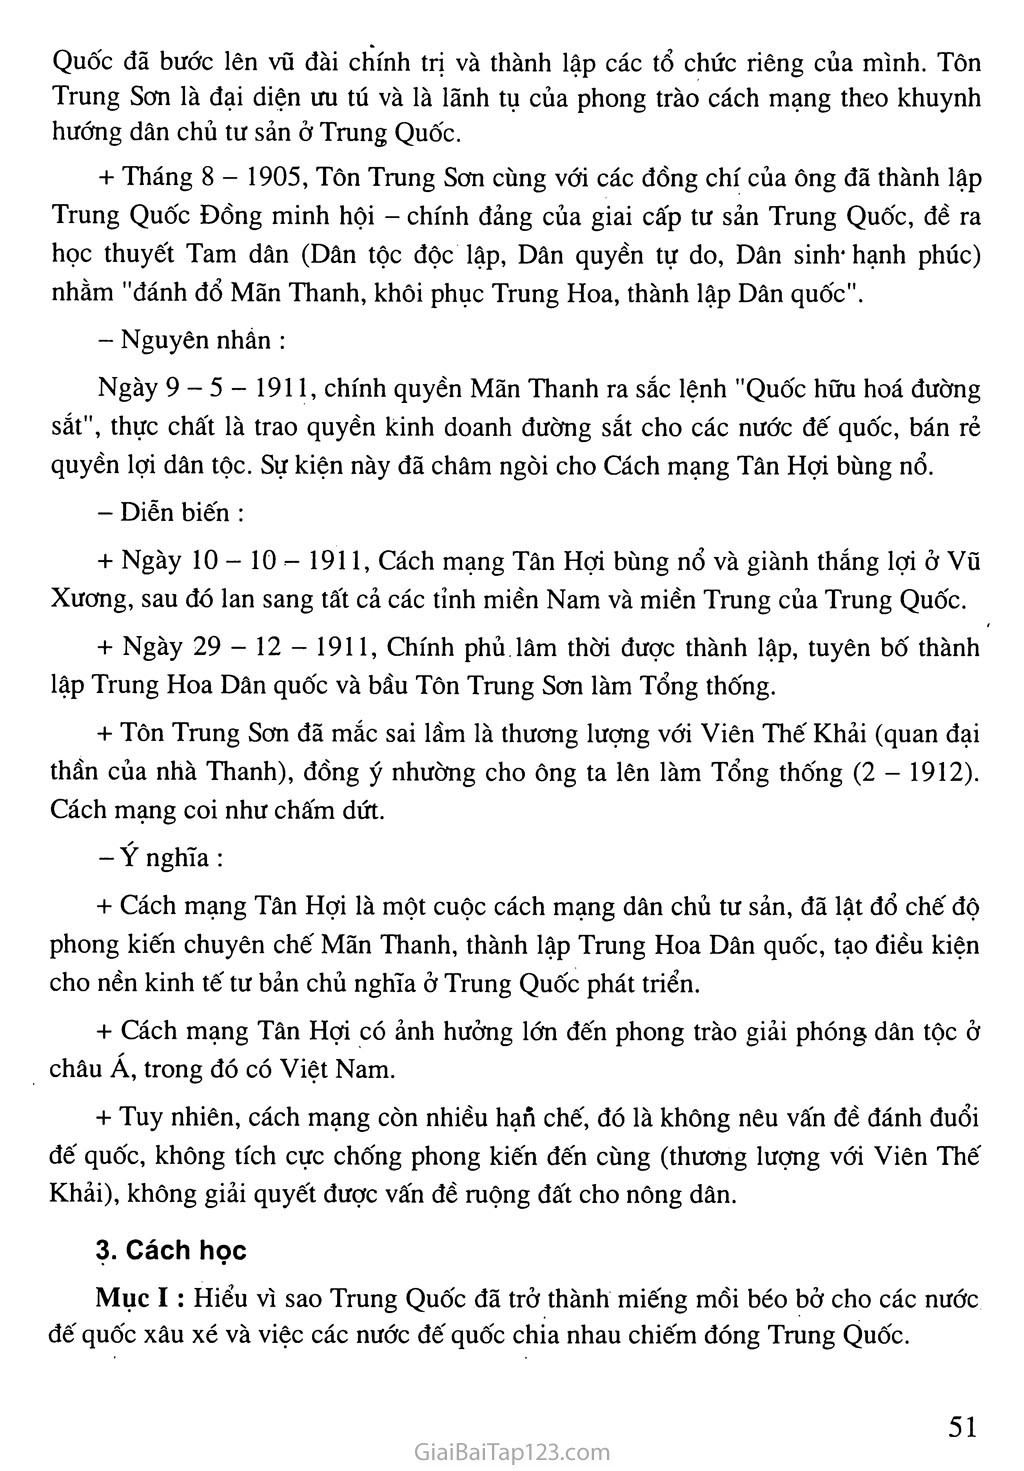 Bài 10: Trung Quốc giữa thế kỉ XIX - đầu thế kỉ XX trang 3